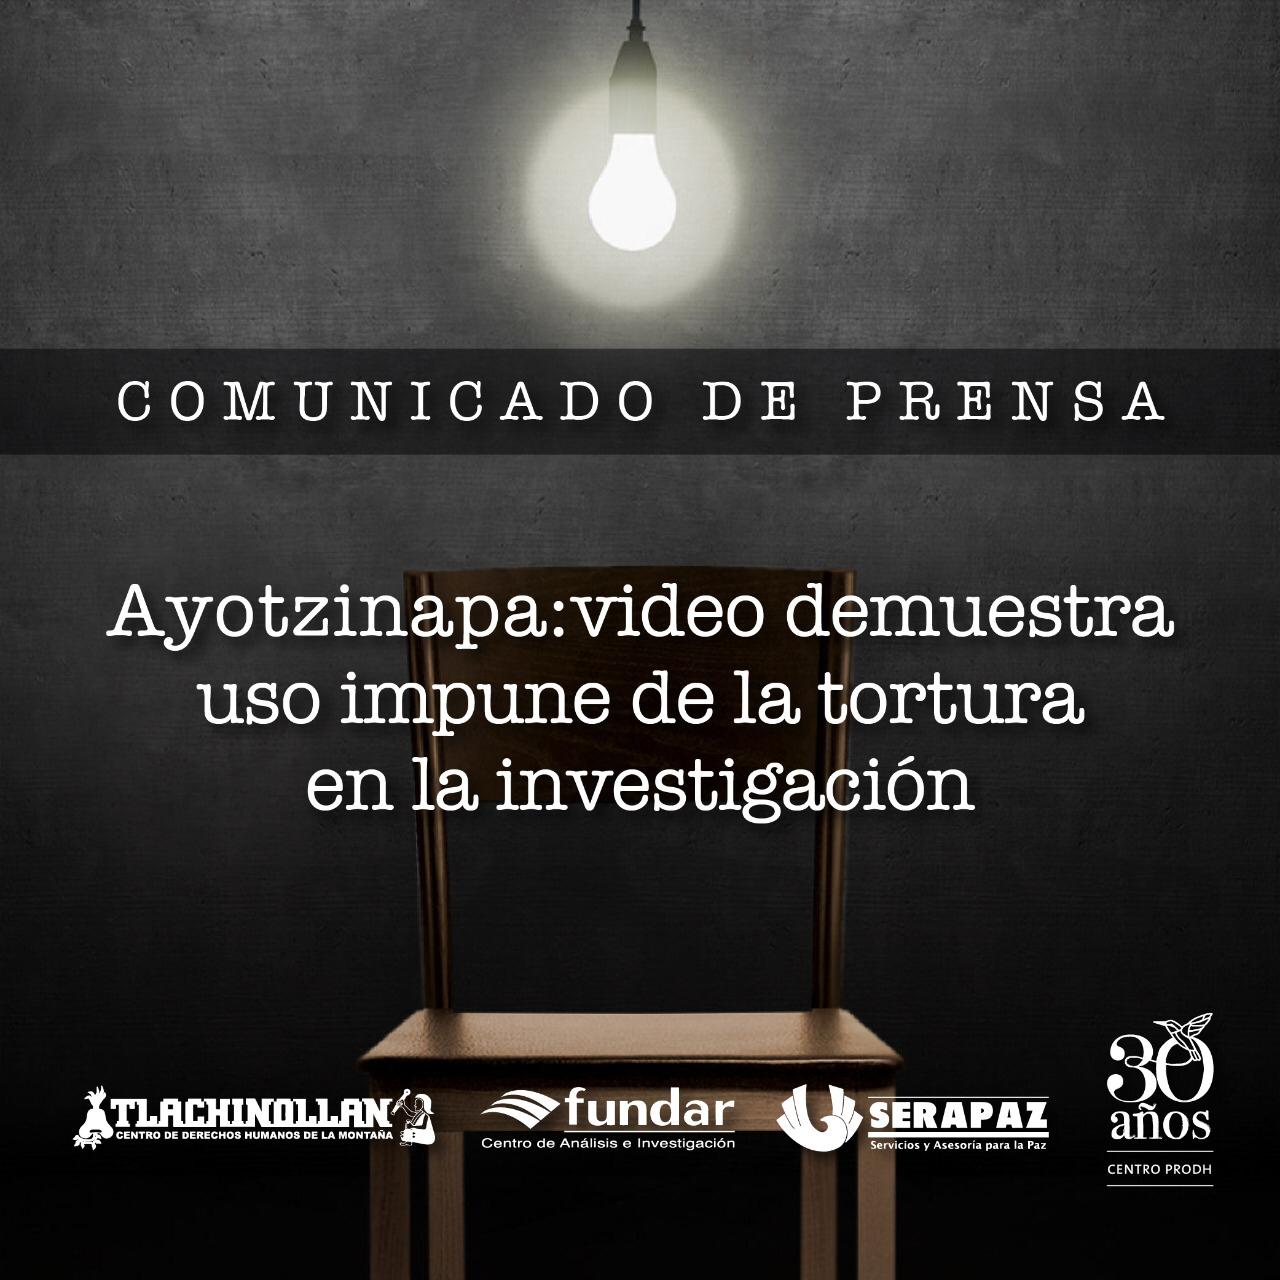 Ayotzinapa: video demuestra uso impune de la tortura en la investigación